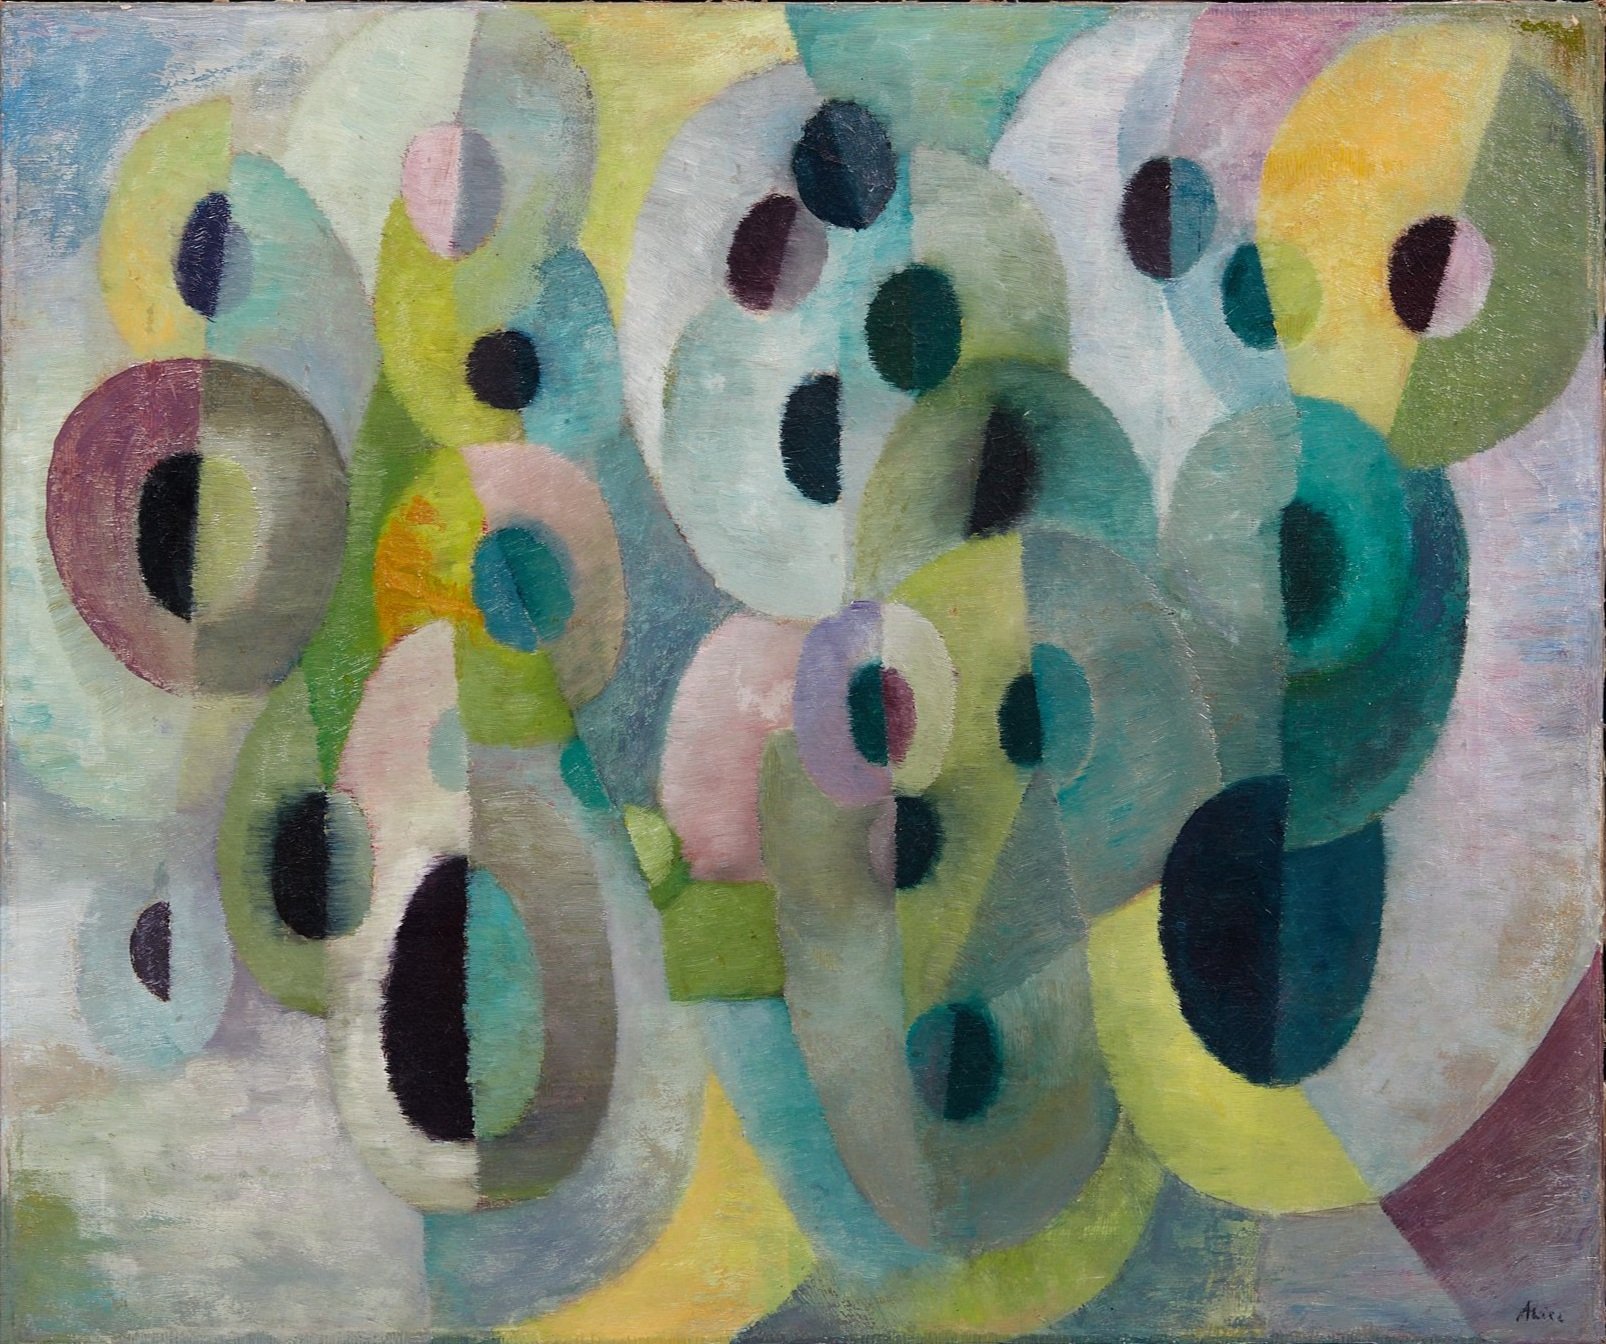  Alice Rahon,  Mémoire de l’eau , 1943, oil on canvas, 18 1/4 x 21 13/16 inches (46.4 x 55.4 cm) 